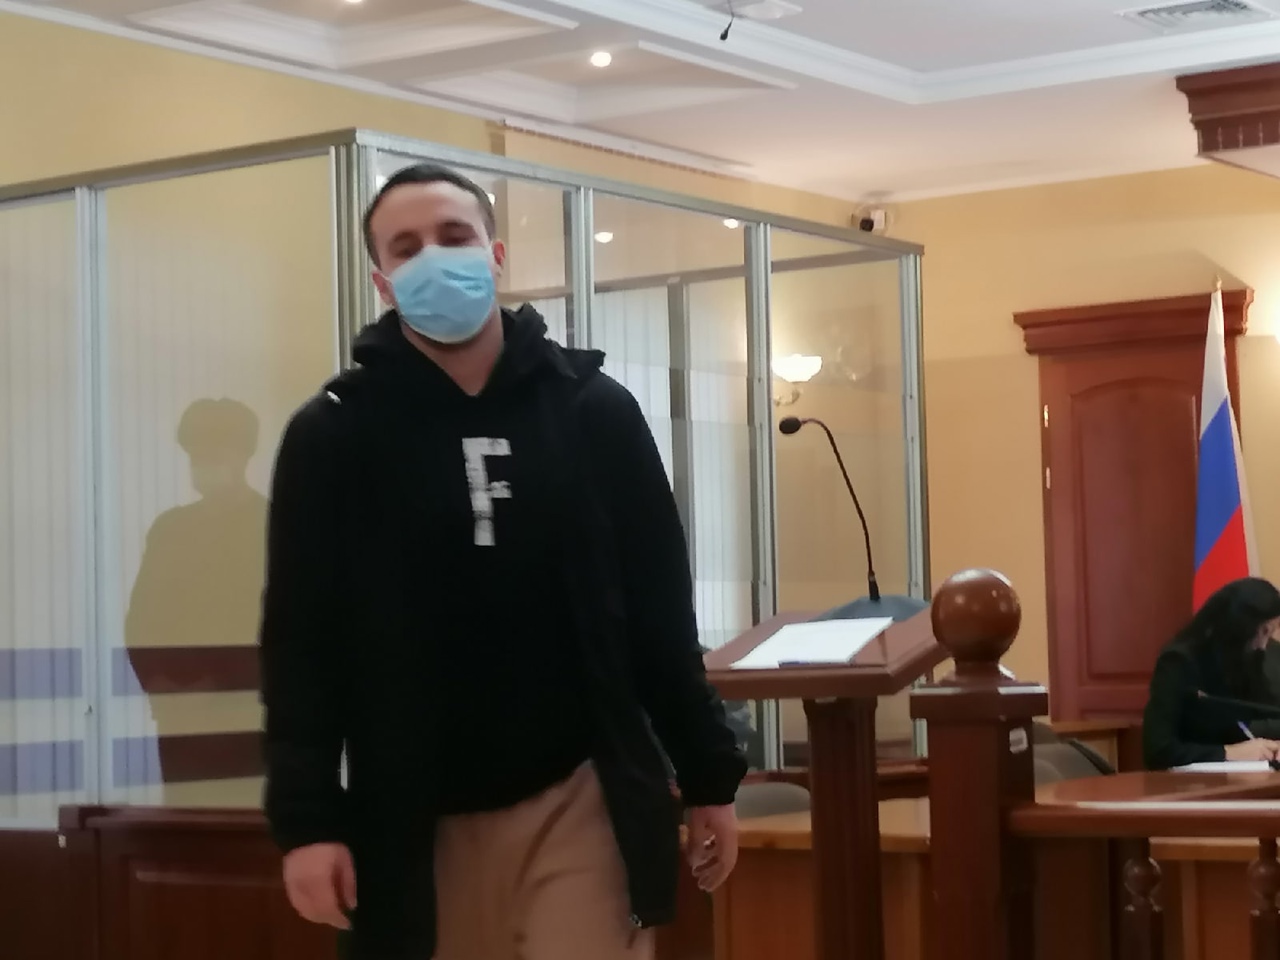 Убийца футболиста Дробыша в роковую ночь еще раз размахивал ножом #Новости #Общество #Омск